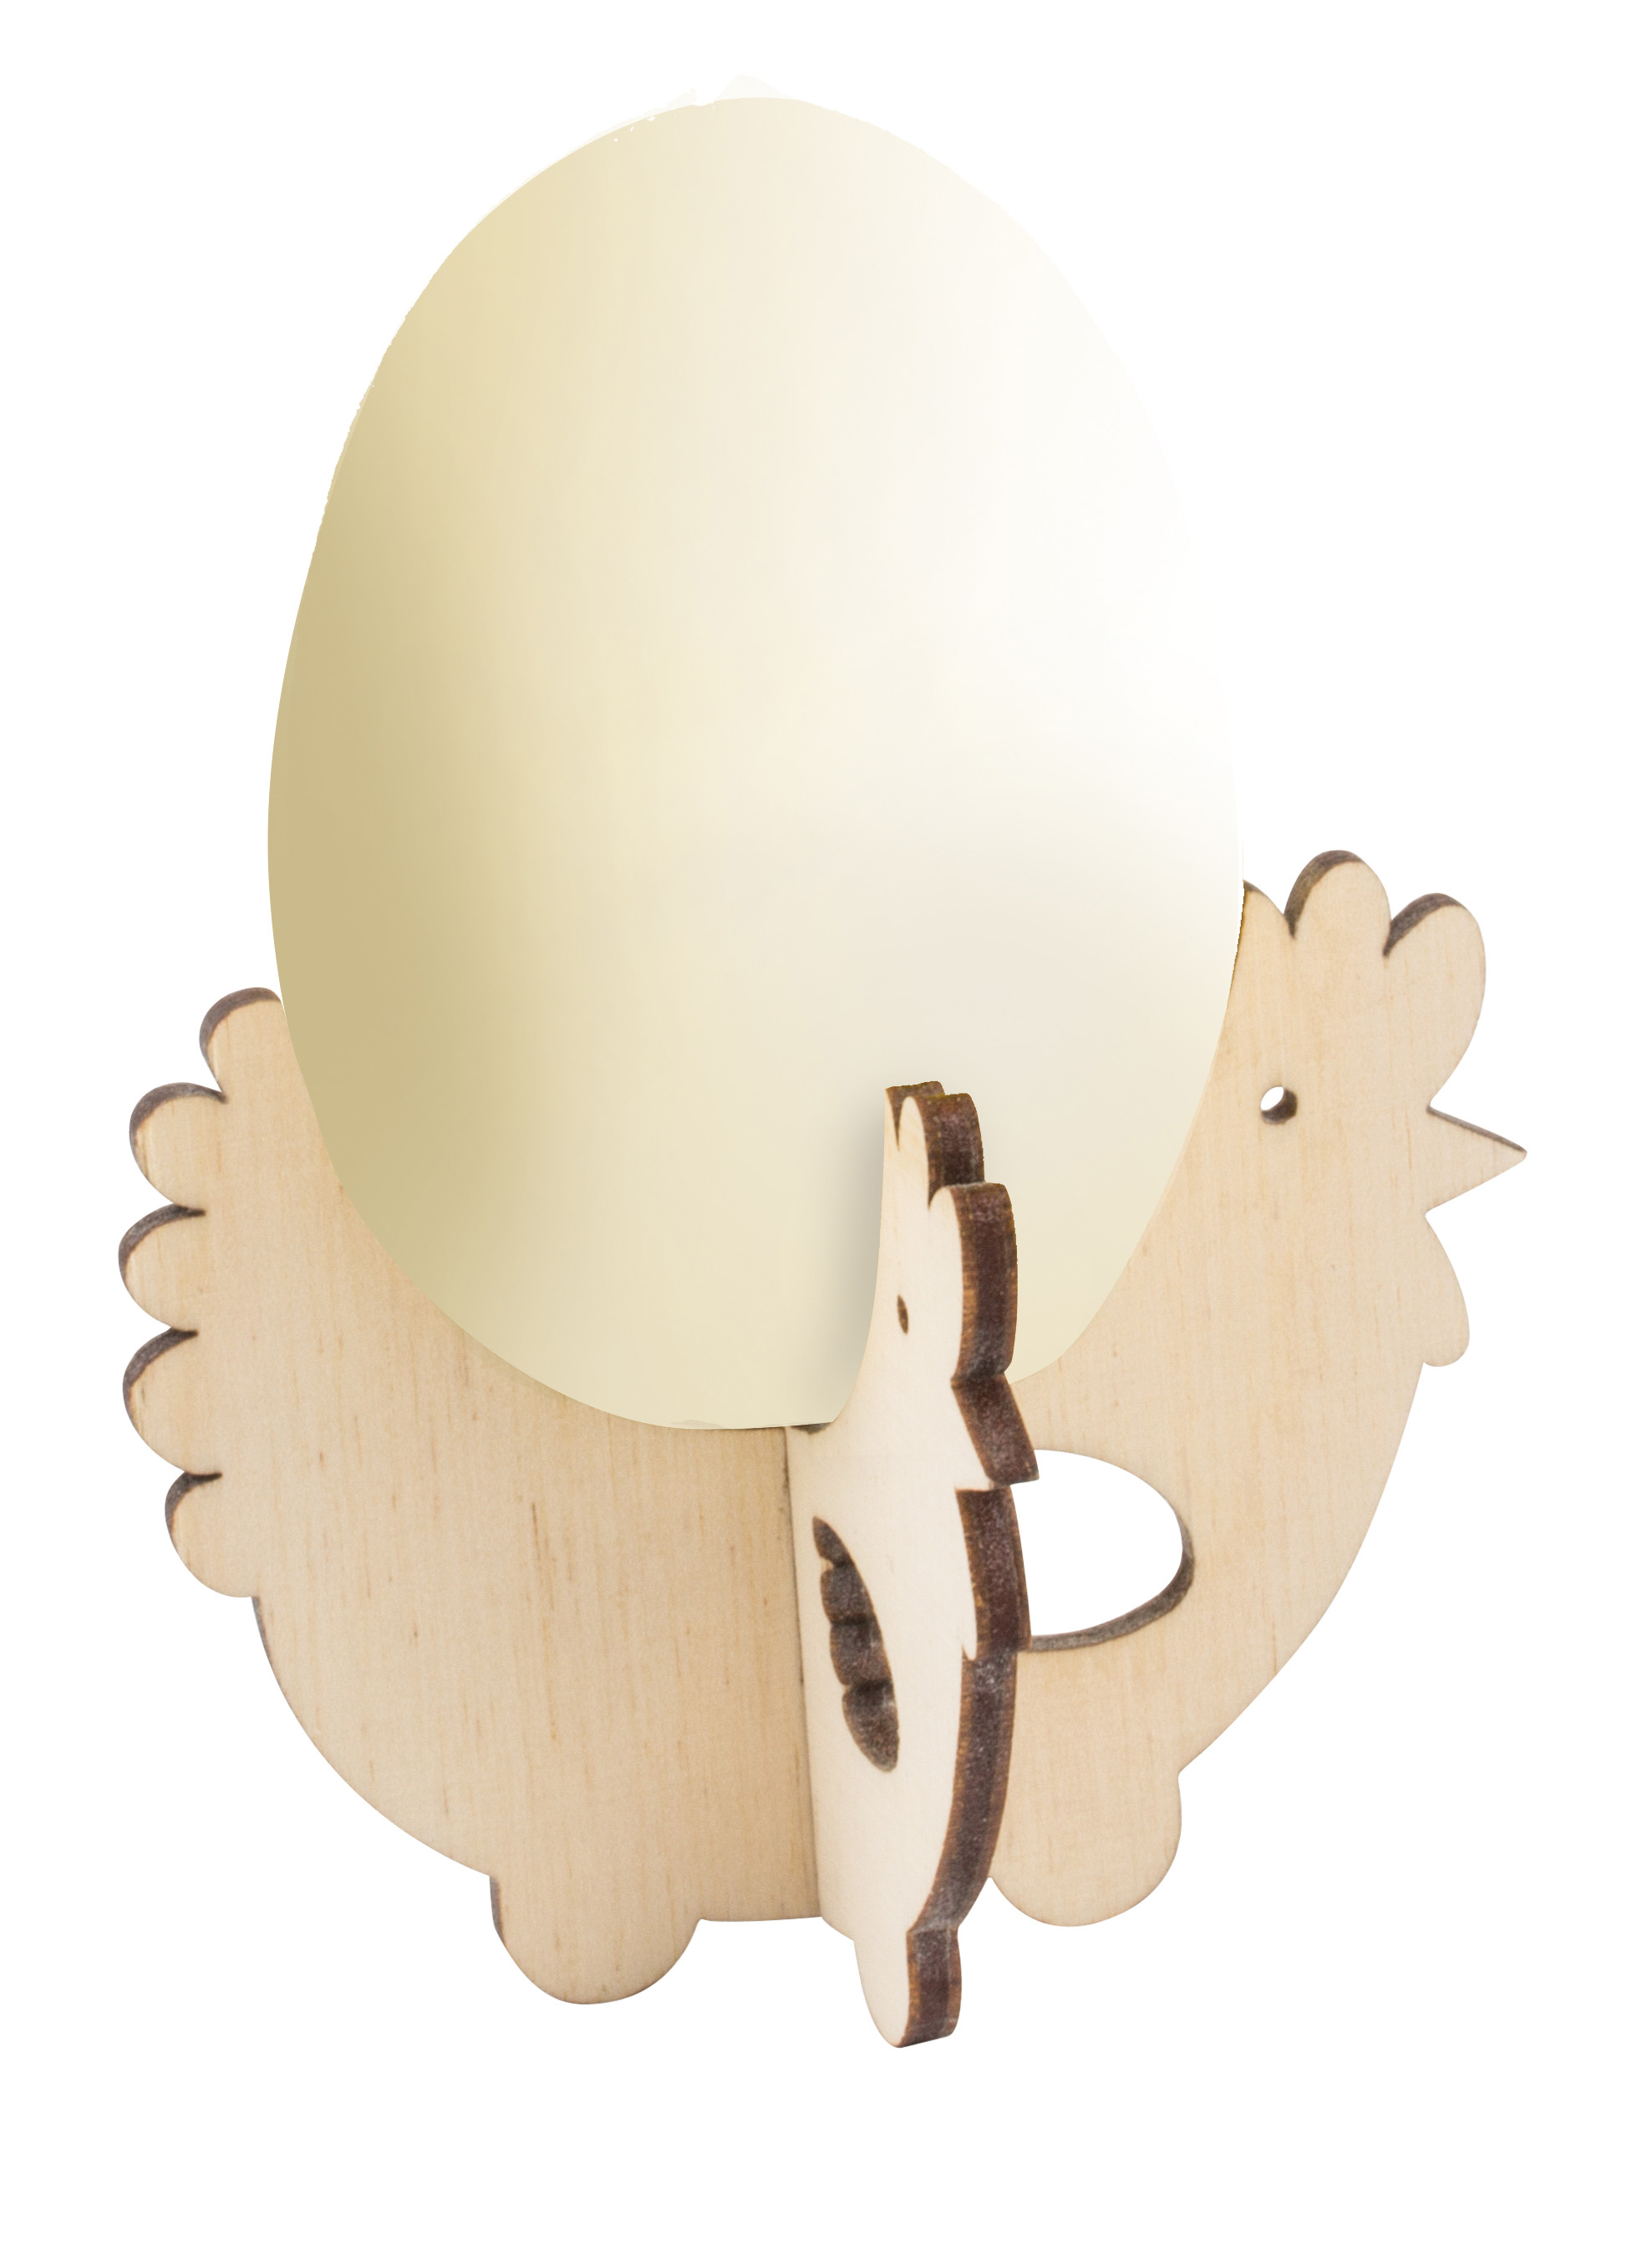 Steck-Eierbecher Huhn